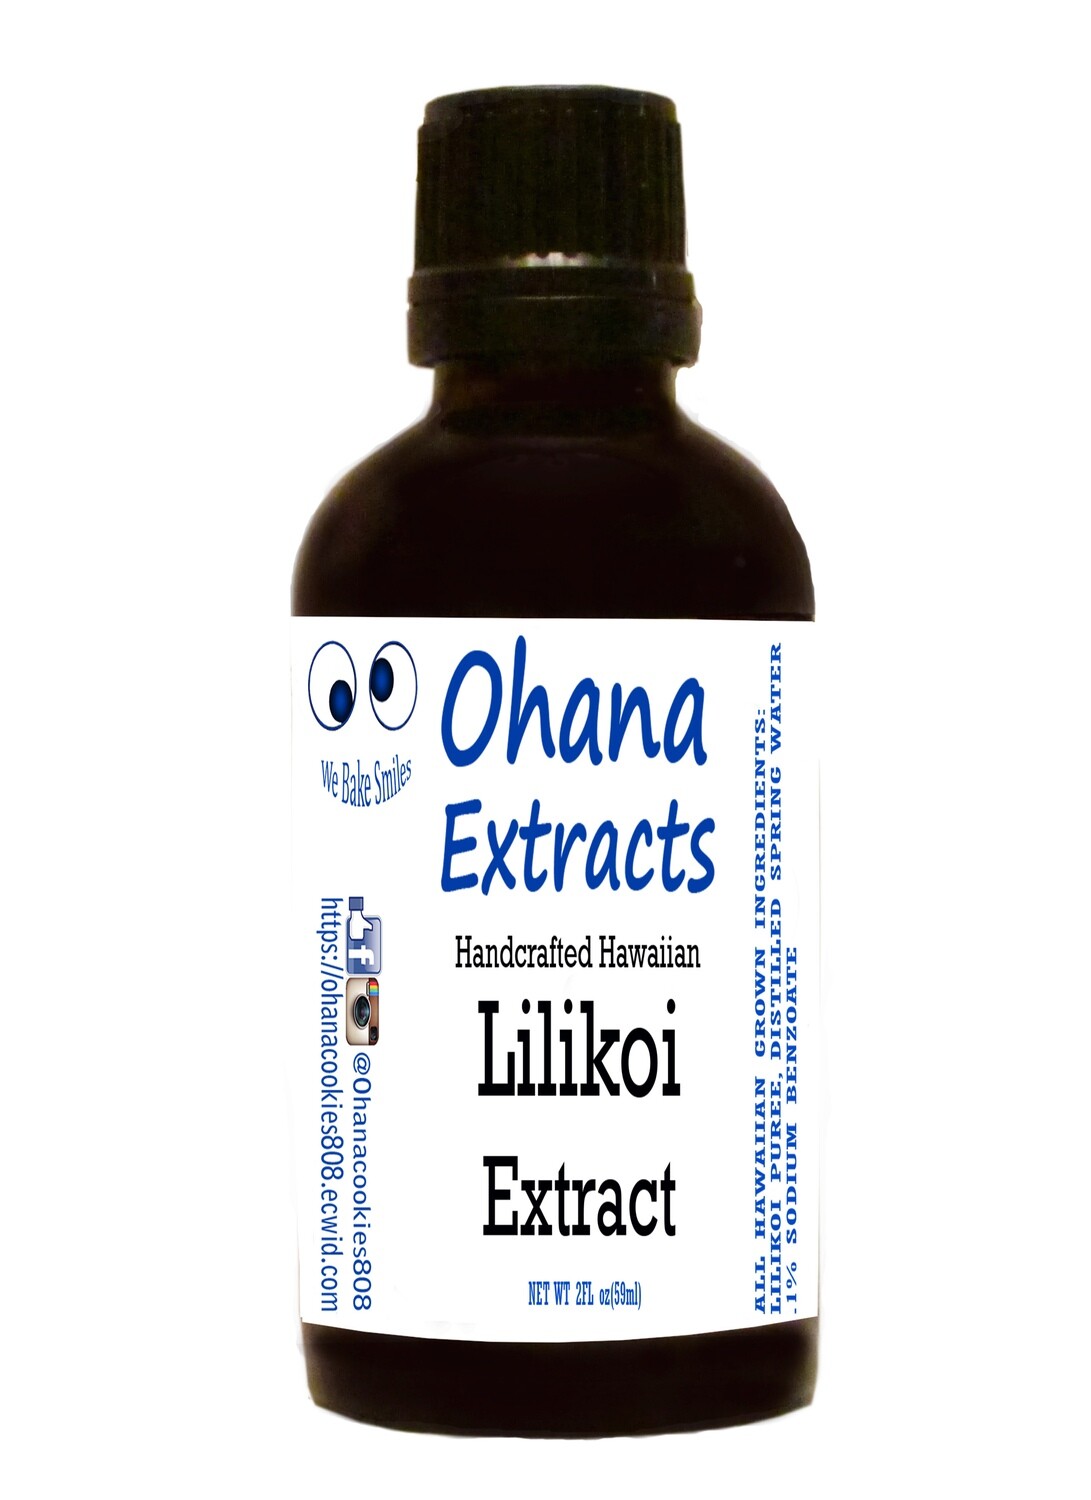 Lilikoi Extract